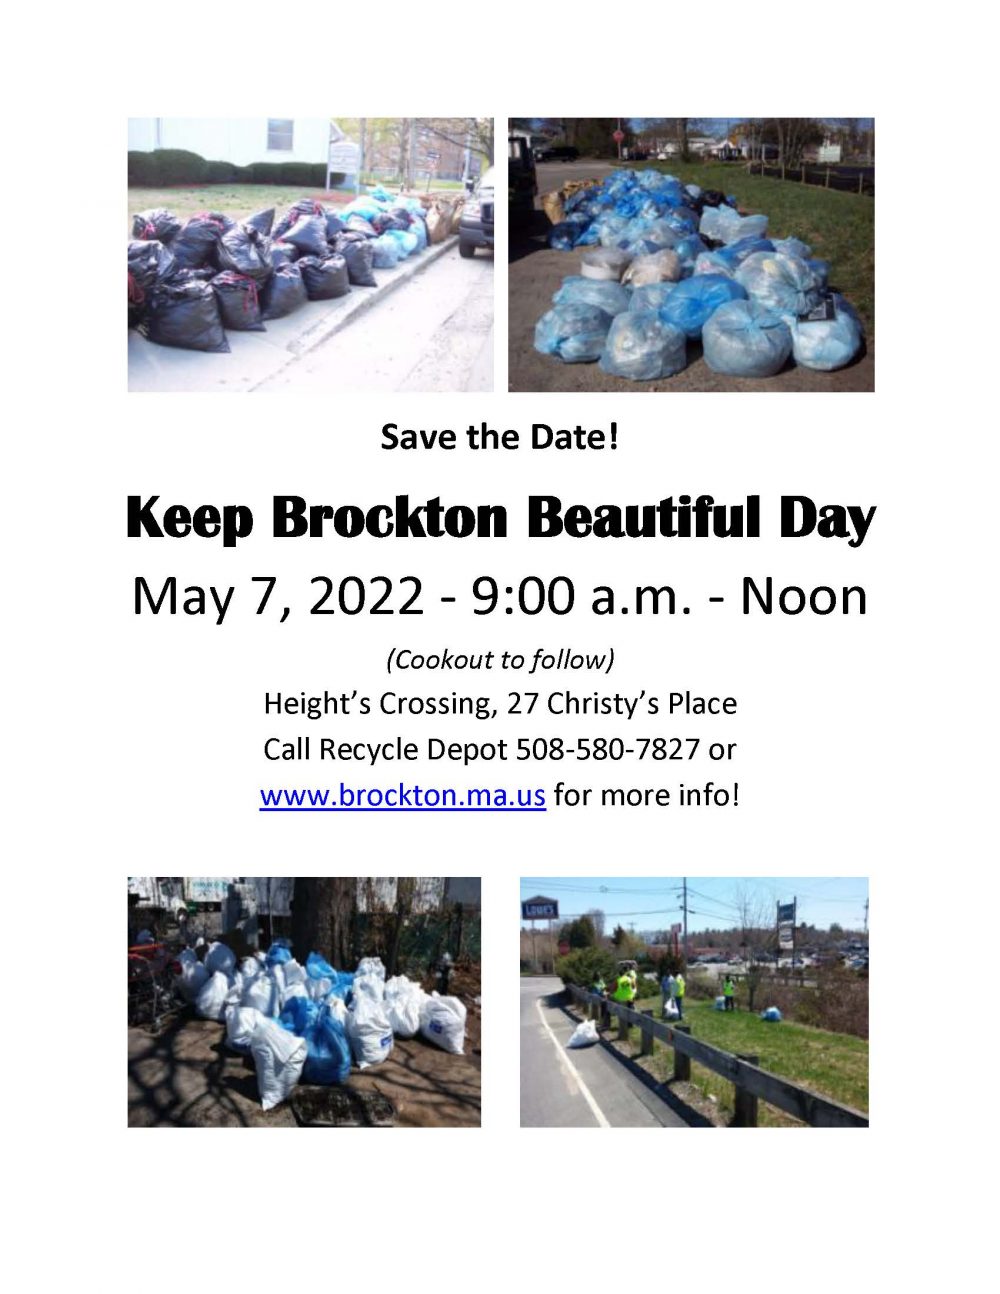 Keeping Brockton Beautiful Day May 7, 2022